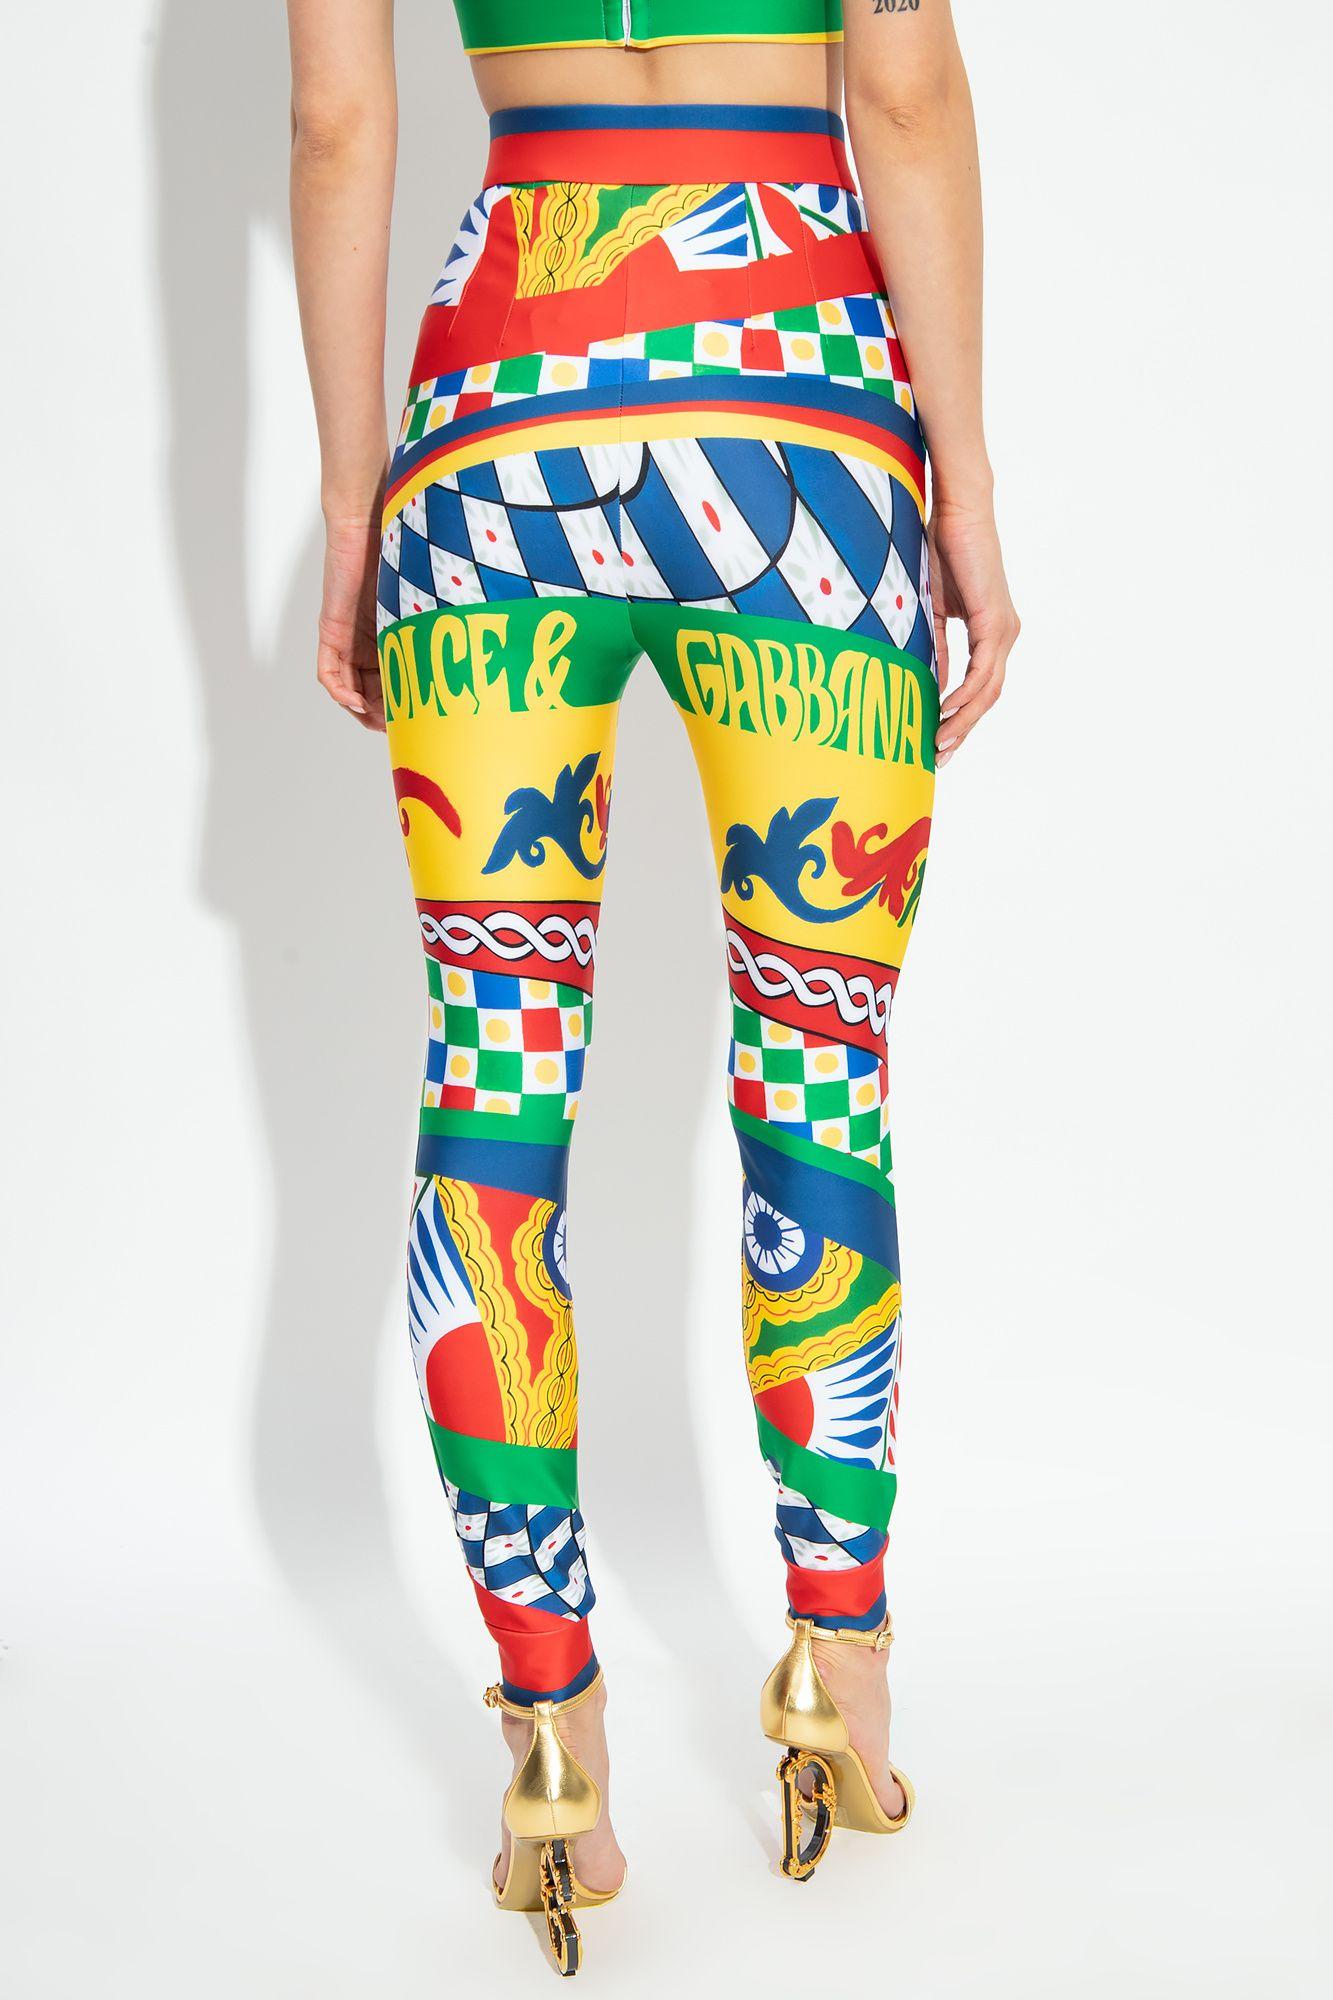 Dolce & Gabbana Kids' Girls Meadow-print Interlock Leggings In Multicolor